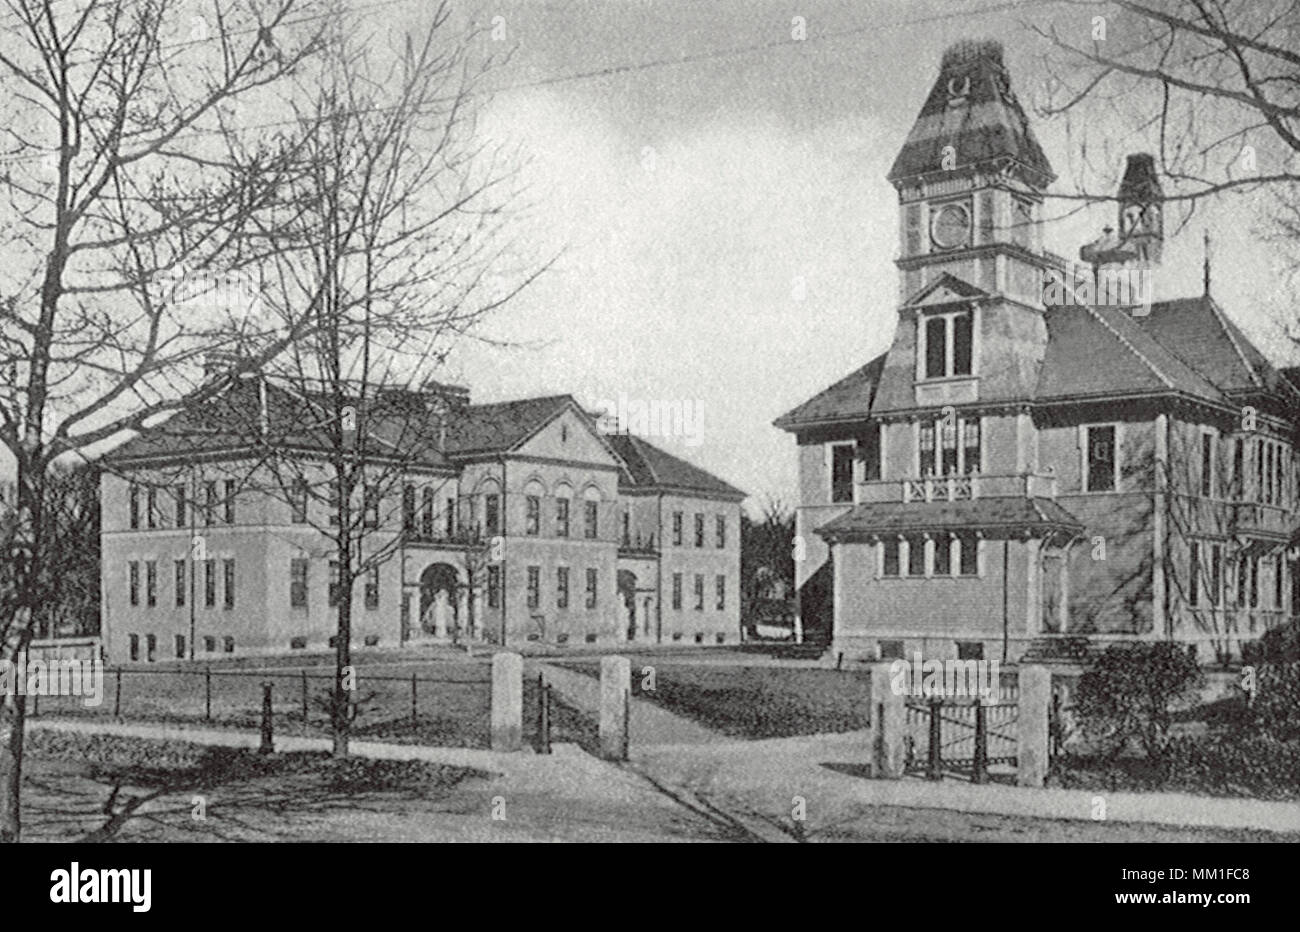 Phillips & Alta scuola di Francesco. Watertown. 1927 Foto Stock